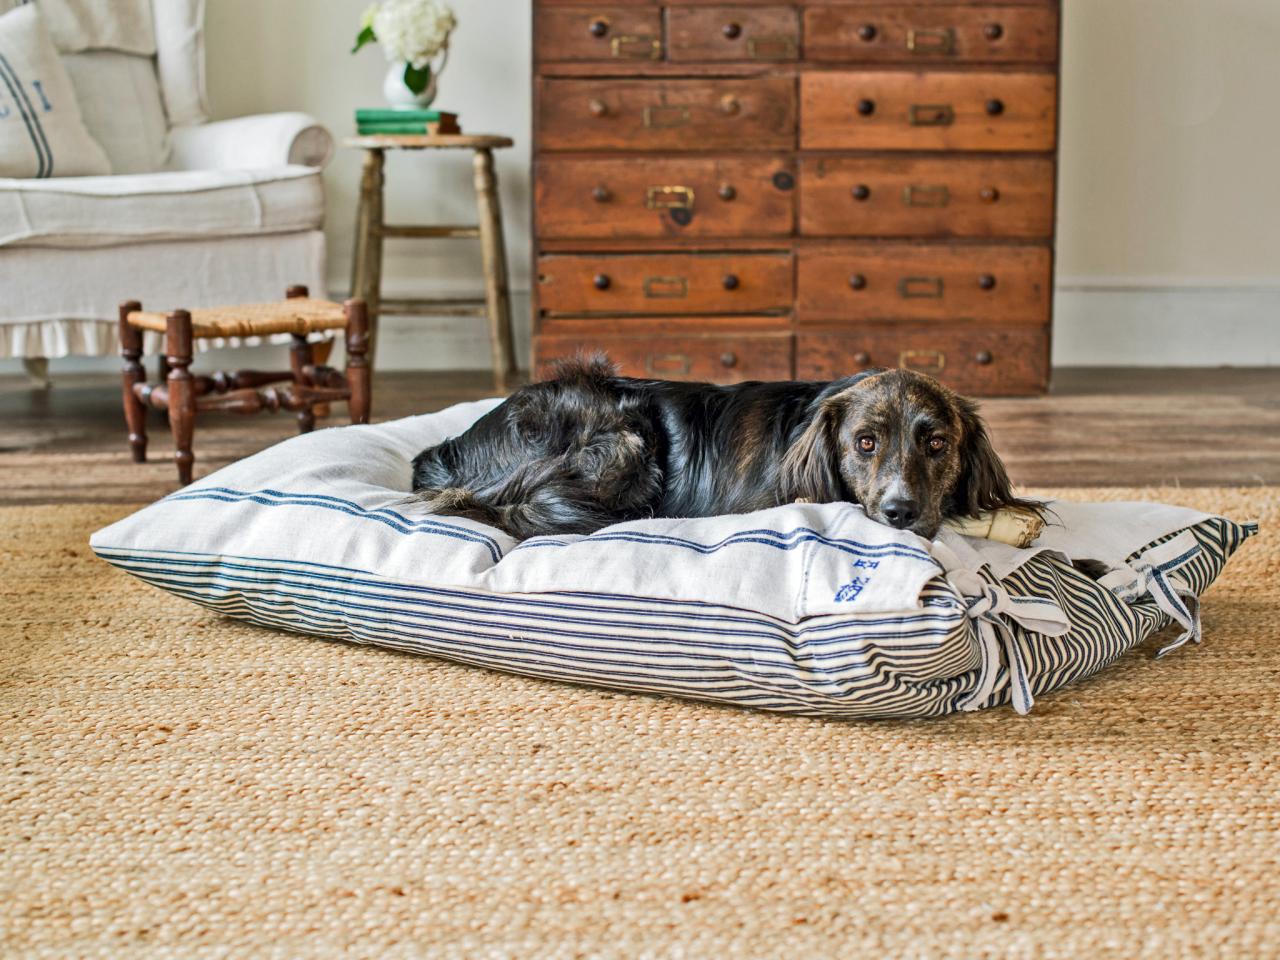 Handmade Dog Bed Dog Lounger Dog Bed Dog Seat Basket Dog Bed,